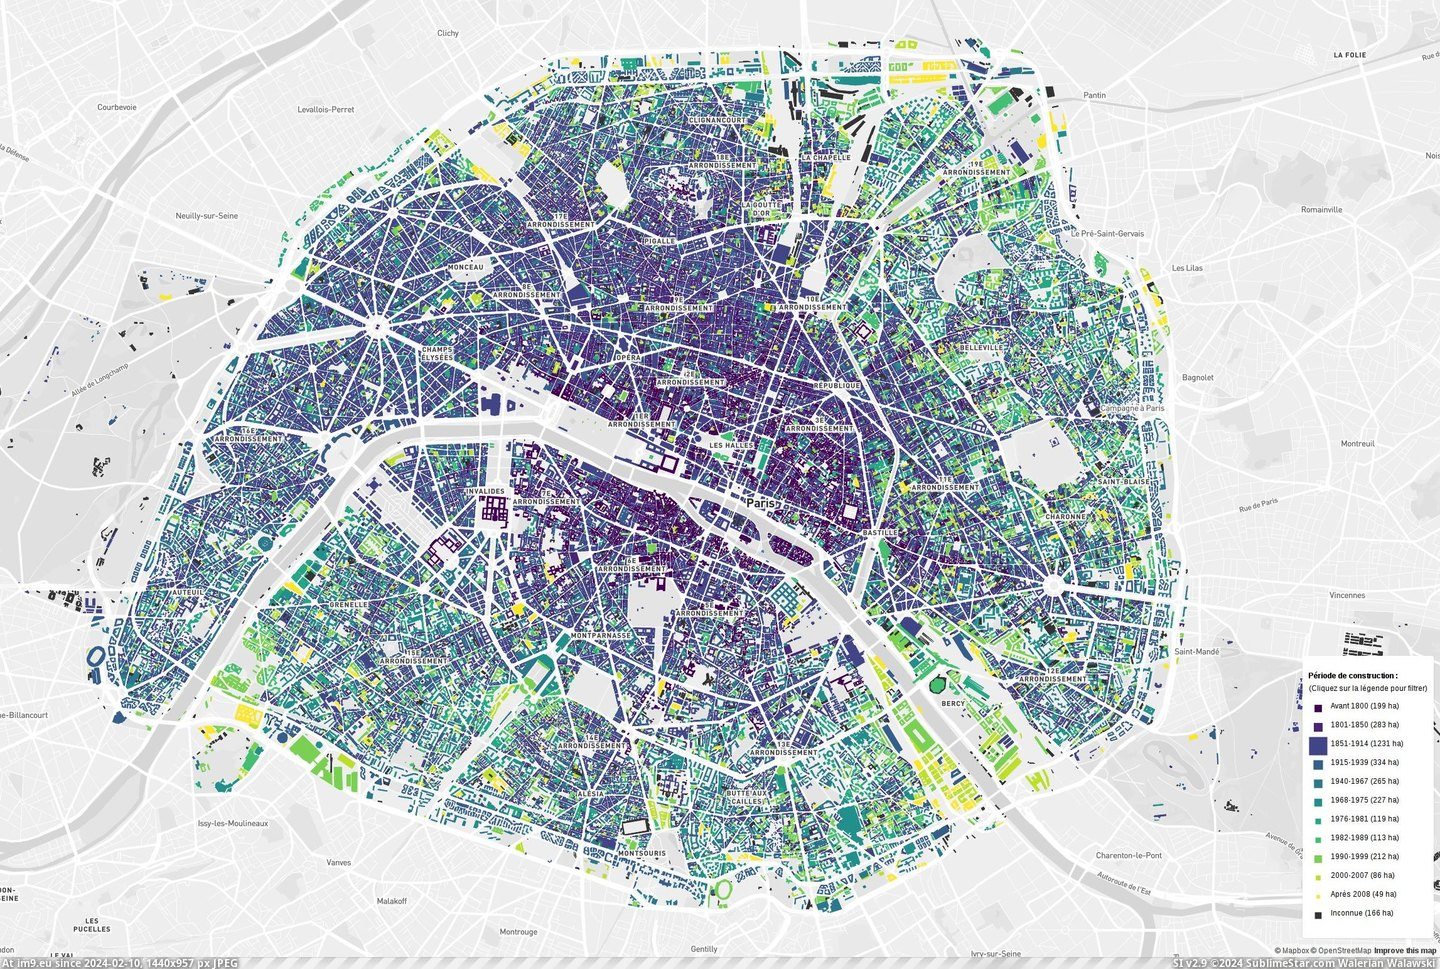 #Paris #Buildings #Construction [Mapporn] Paris buildings, by construction date [2294x1537] Pic. (Image of album My r/MAPS favs))